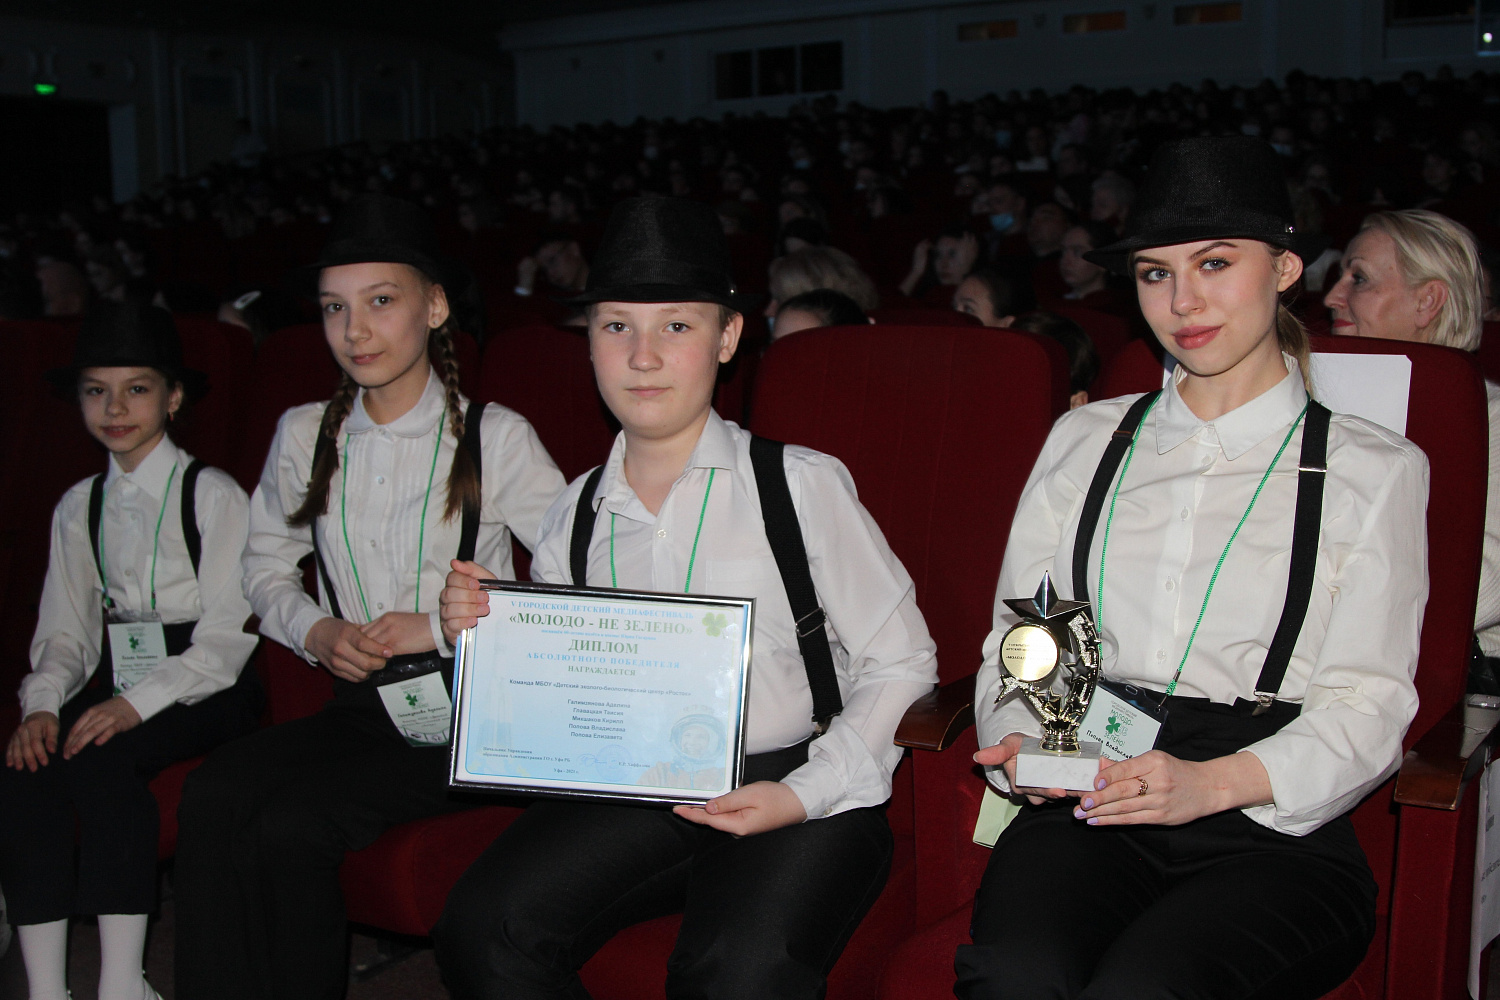 В Уфе наградили победителей V детского медиафестиваля «Молодо – не зелено».